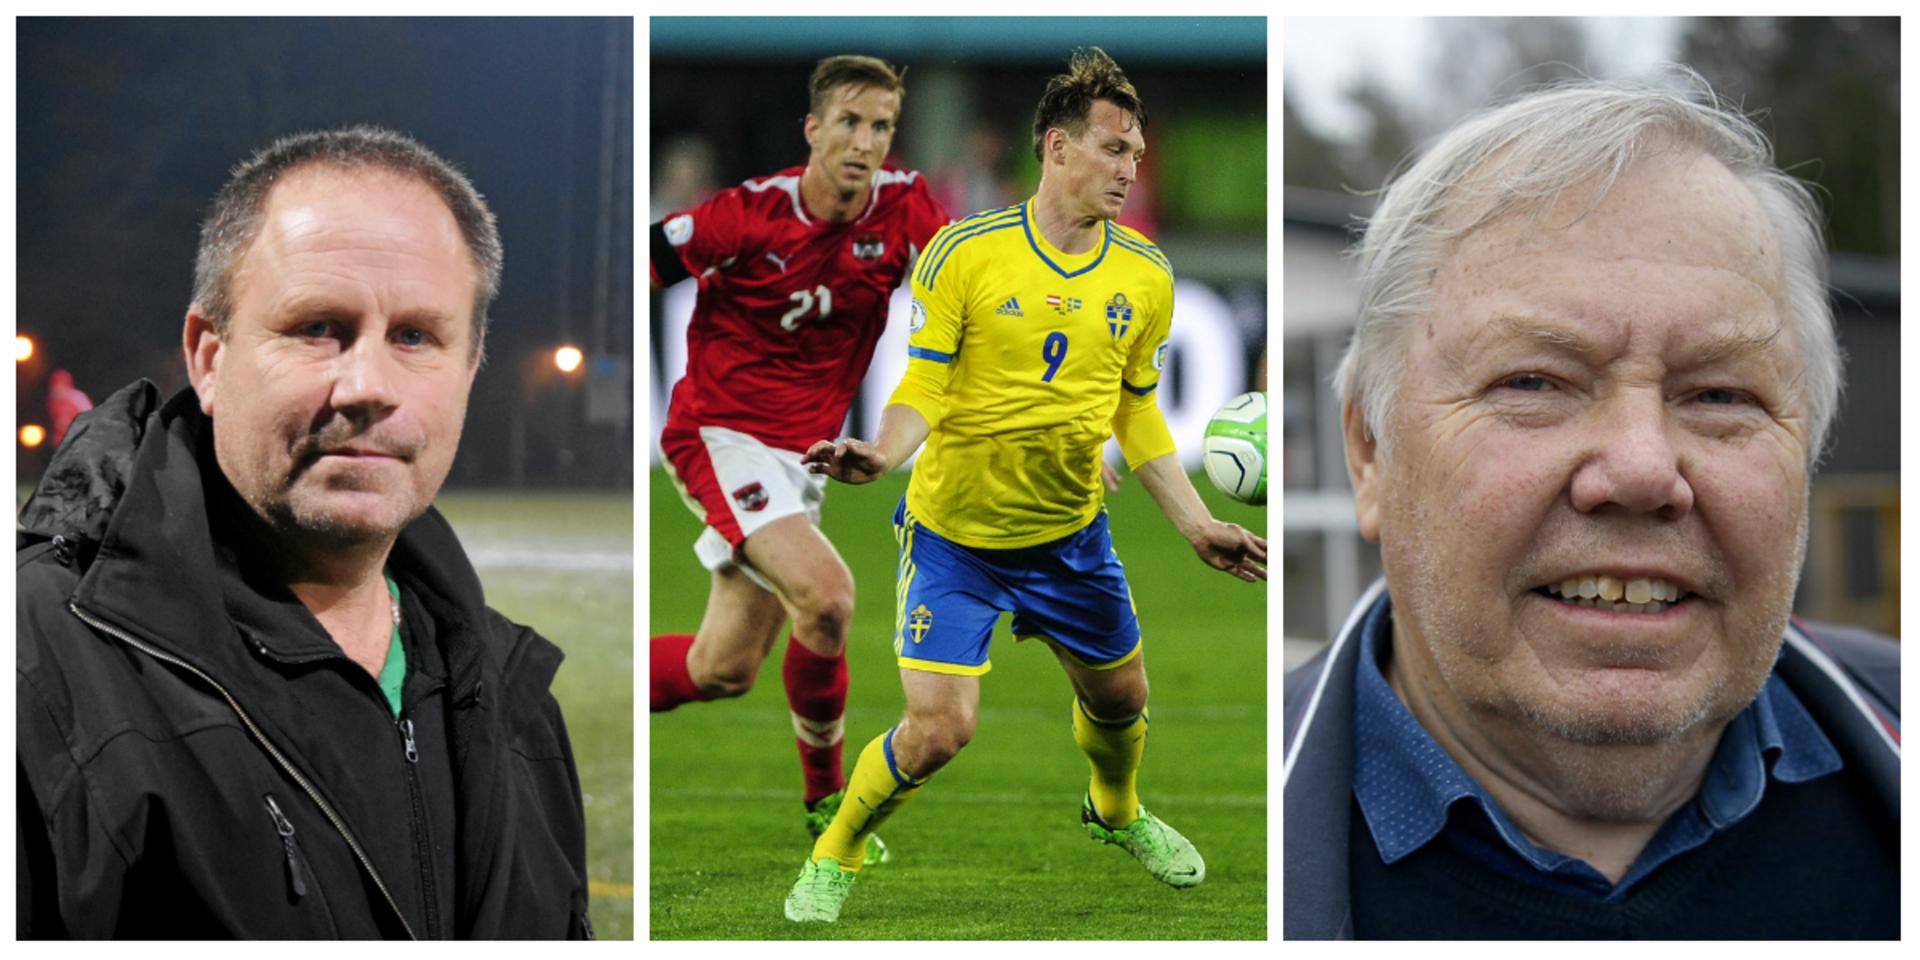 Sportchefen Peter Svensson släppte den historiska transferbomben: Kim Källström är klar för Grebbestads IF. Sportchefen bekräftar att Bert Karlsson står bakom finansieringen av den tidigare landslagsspelaren.